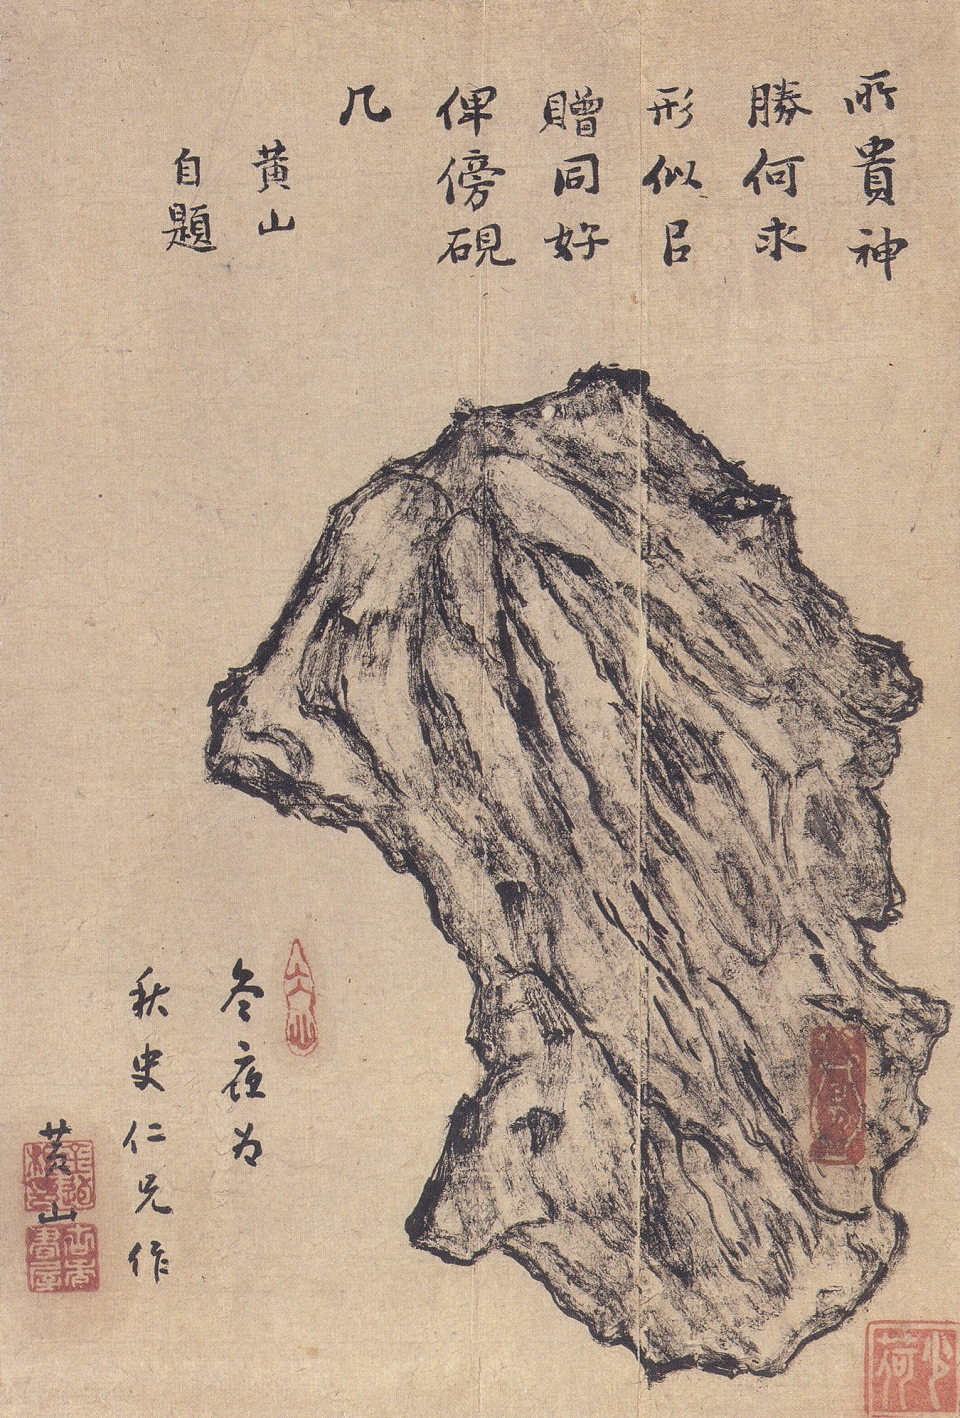 김유근, ‘괴석’, 19세기, 비단에 수묵, 24.5×16.5㎝, 간송미술문화재단 소장. 한때 소장했던 사람의 도장도 보인다.